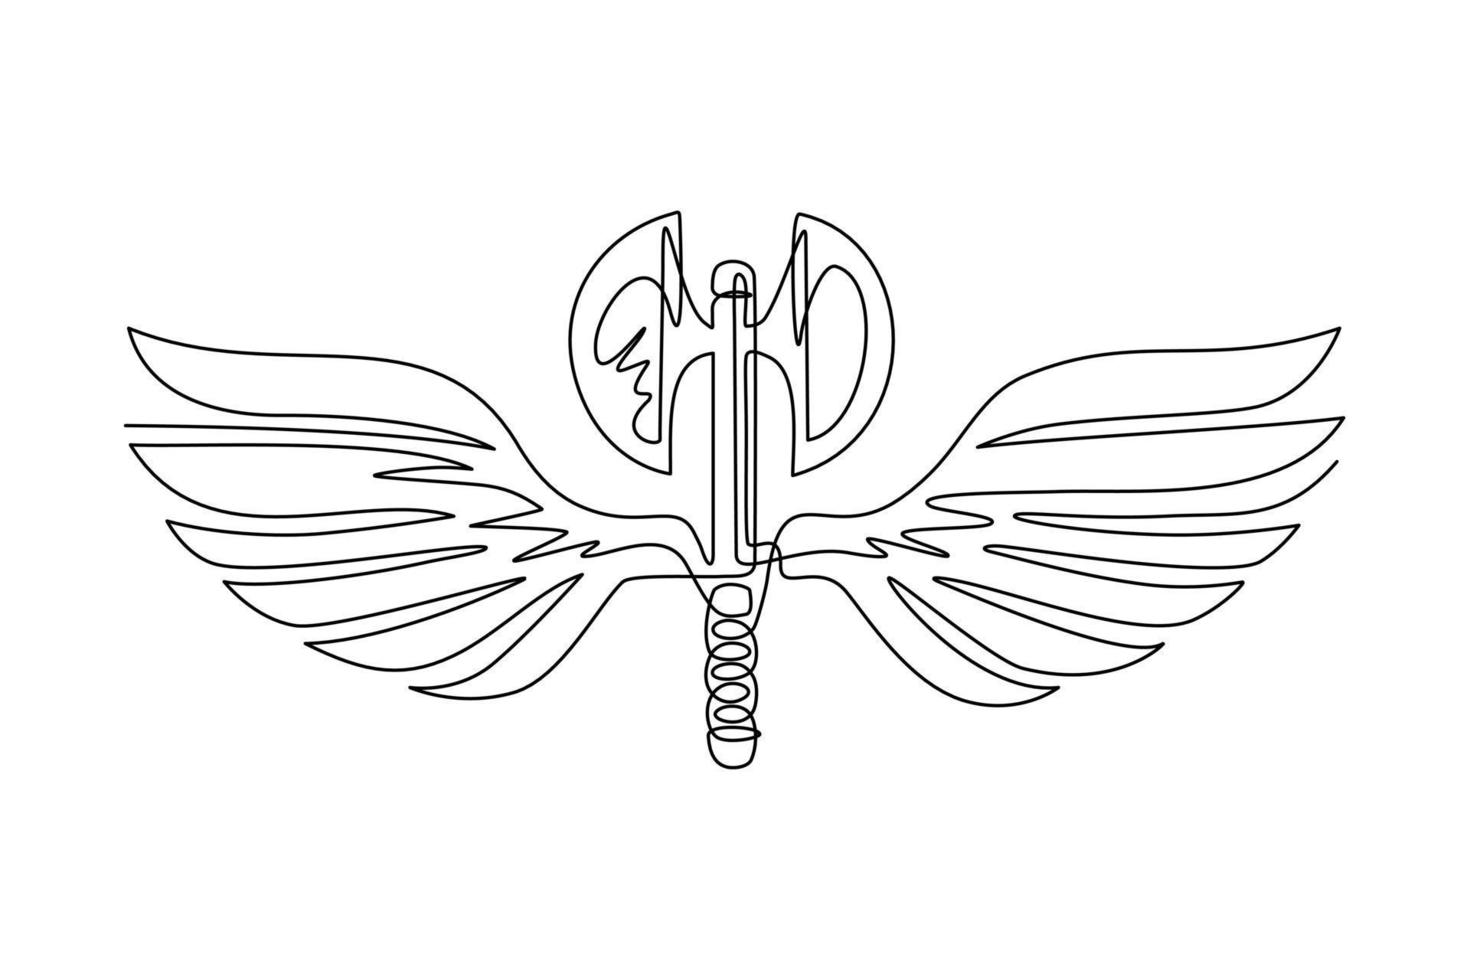 plantilla de icono de alas de hacha de dibujo de una línea continua. logotipo de hacha alada en blanco y negro con elegantes alas extendidas y plumas para el diseño del logotipo. ilustración gráfica de vector de diseño de dibujo de una sola línea